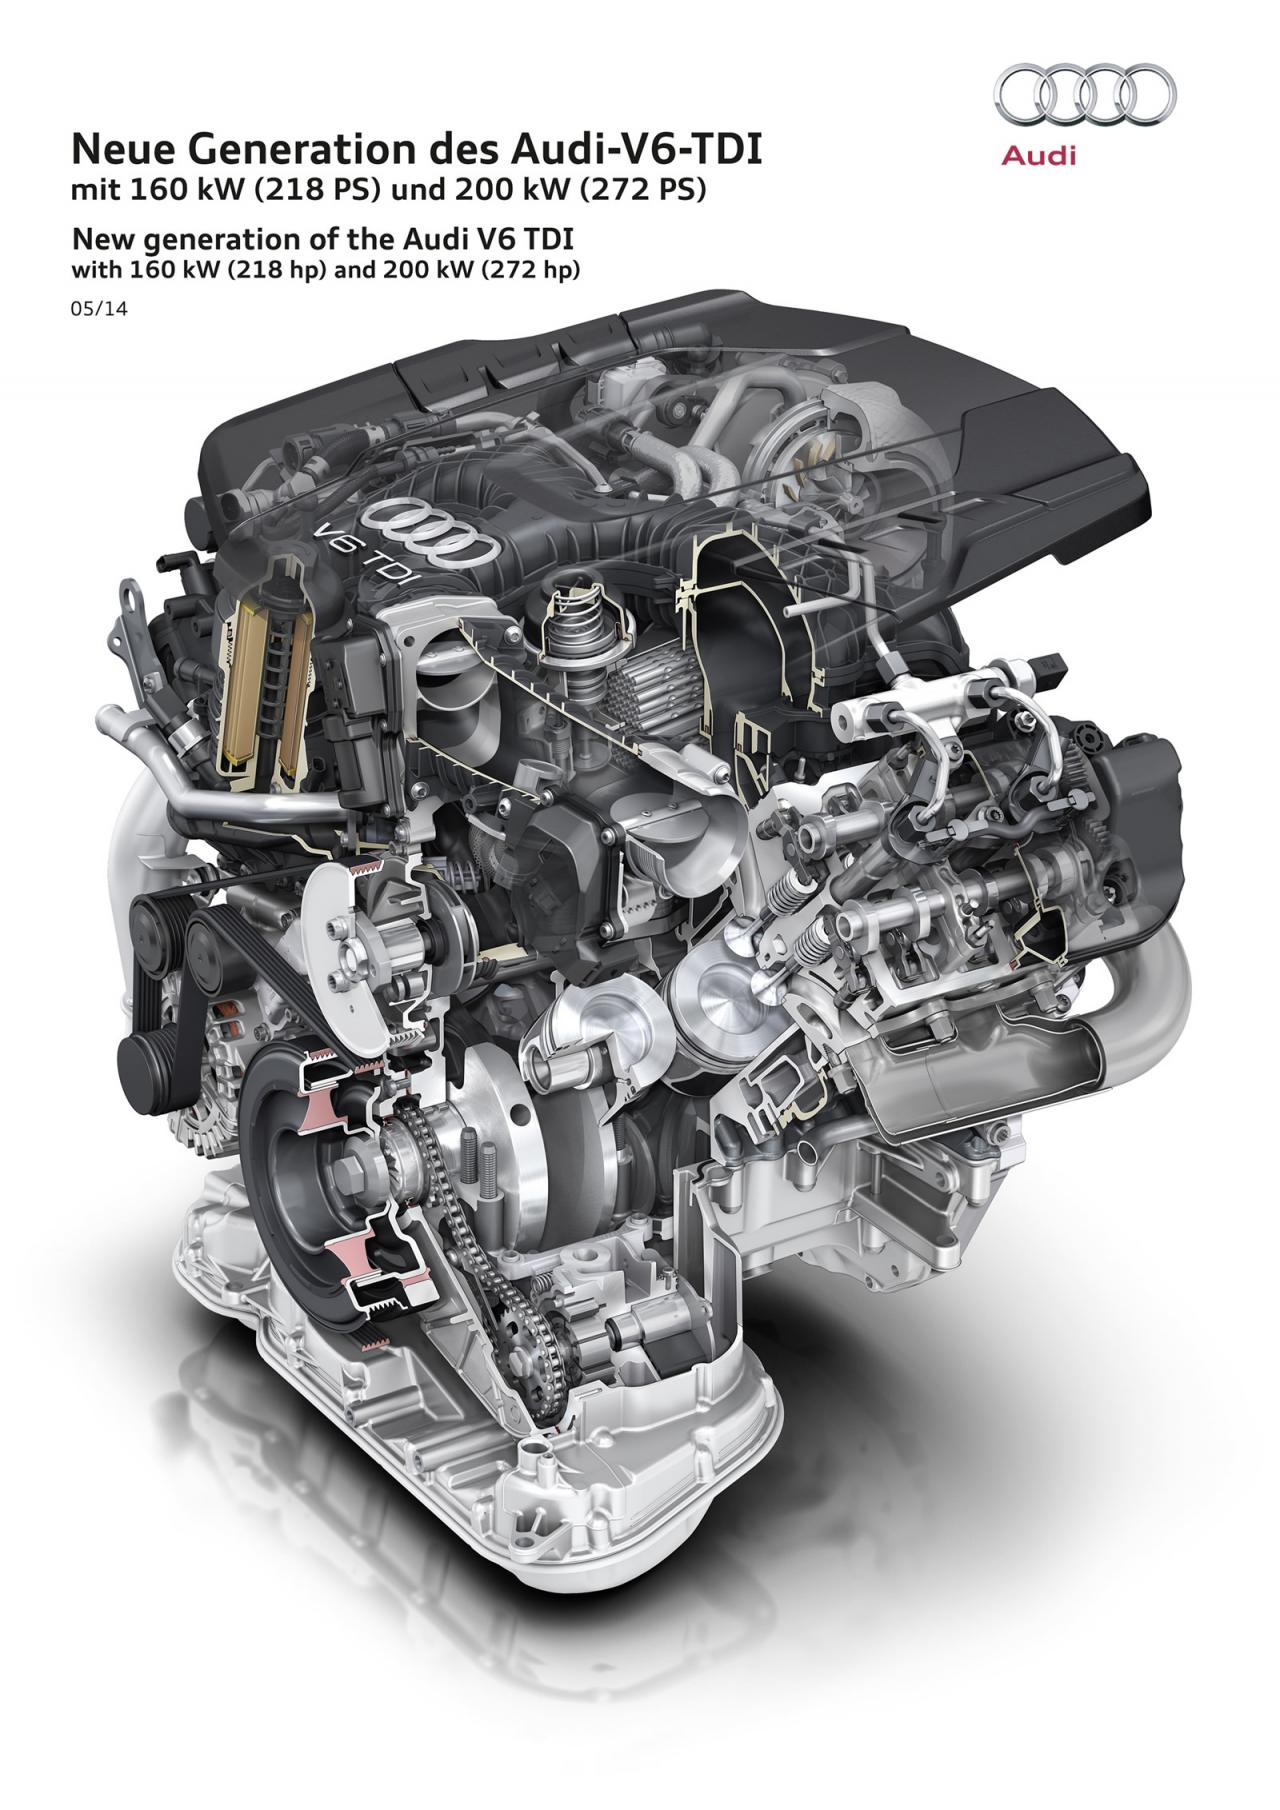 Audi presenta sus nuevas motorizaciones V6 TDI Clean Diesel